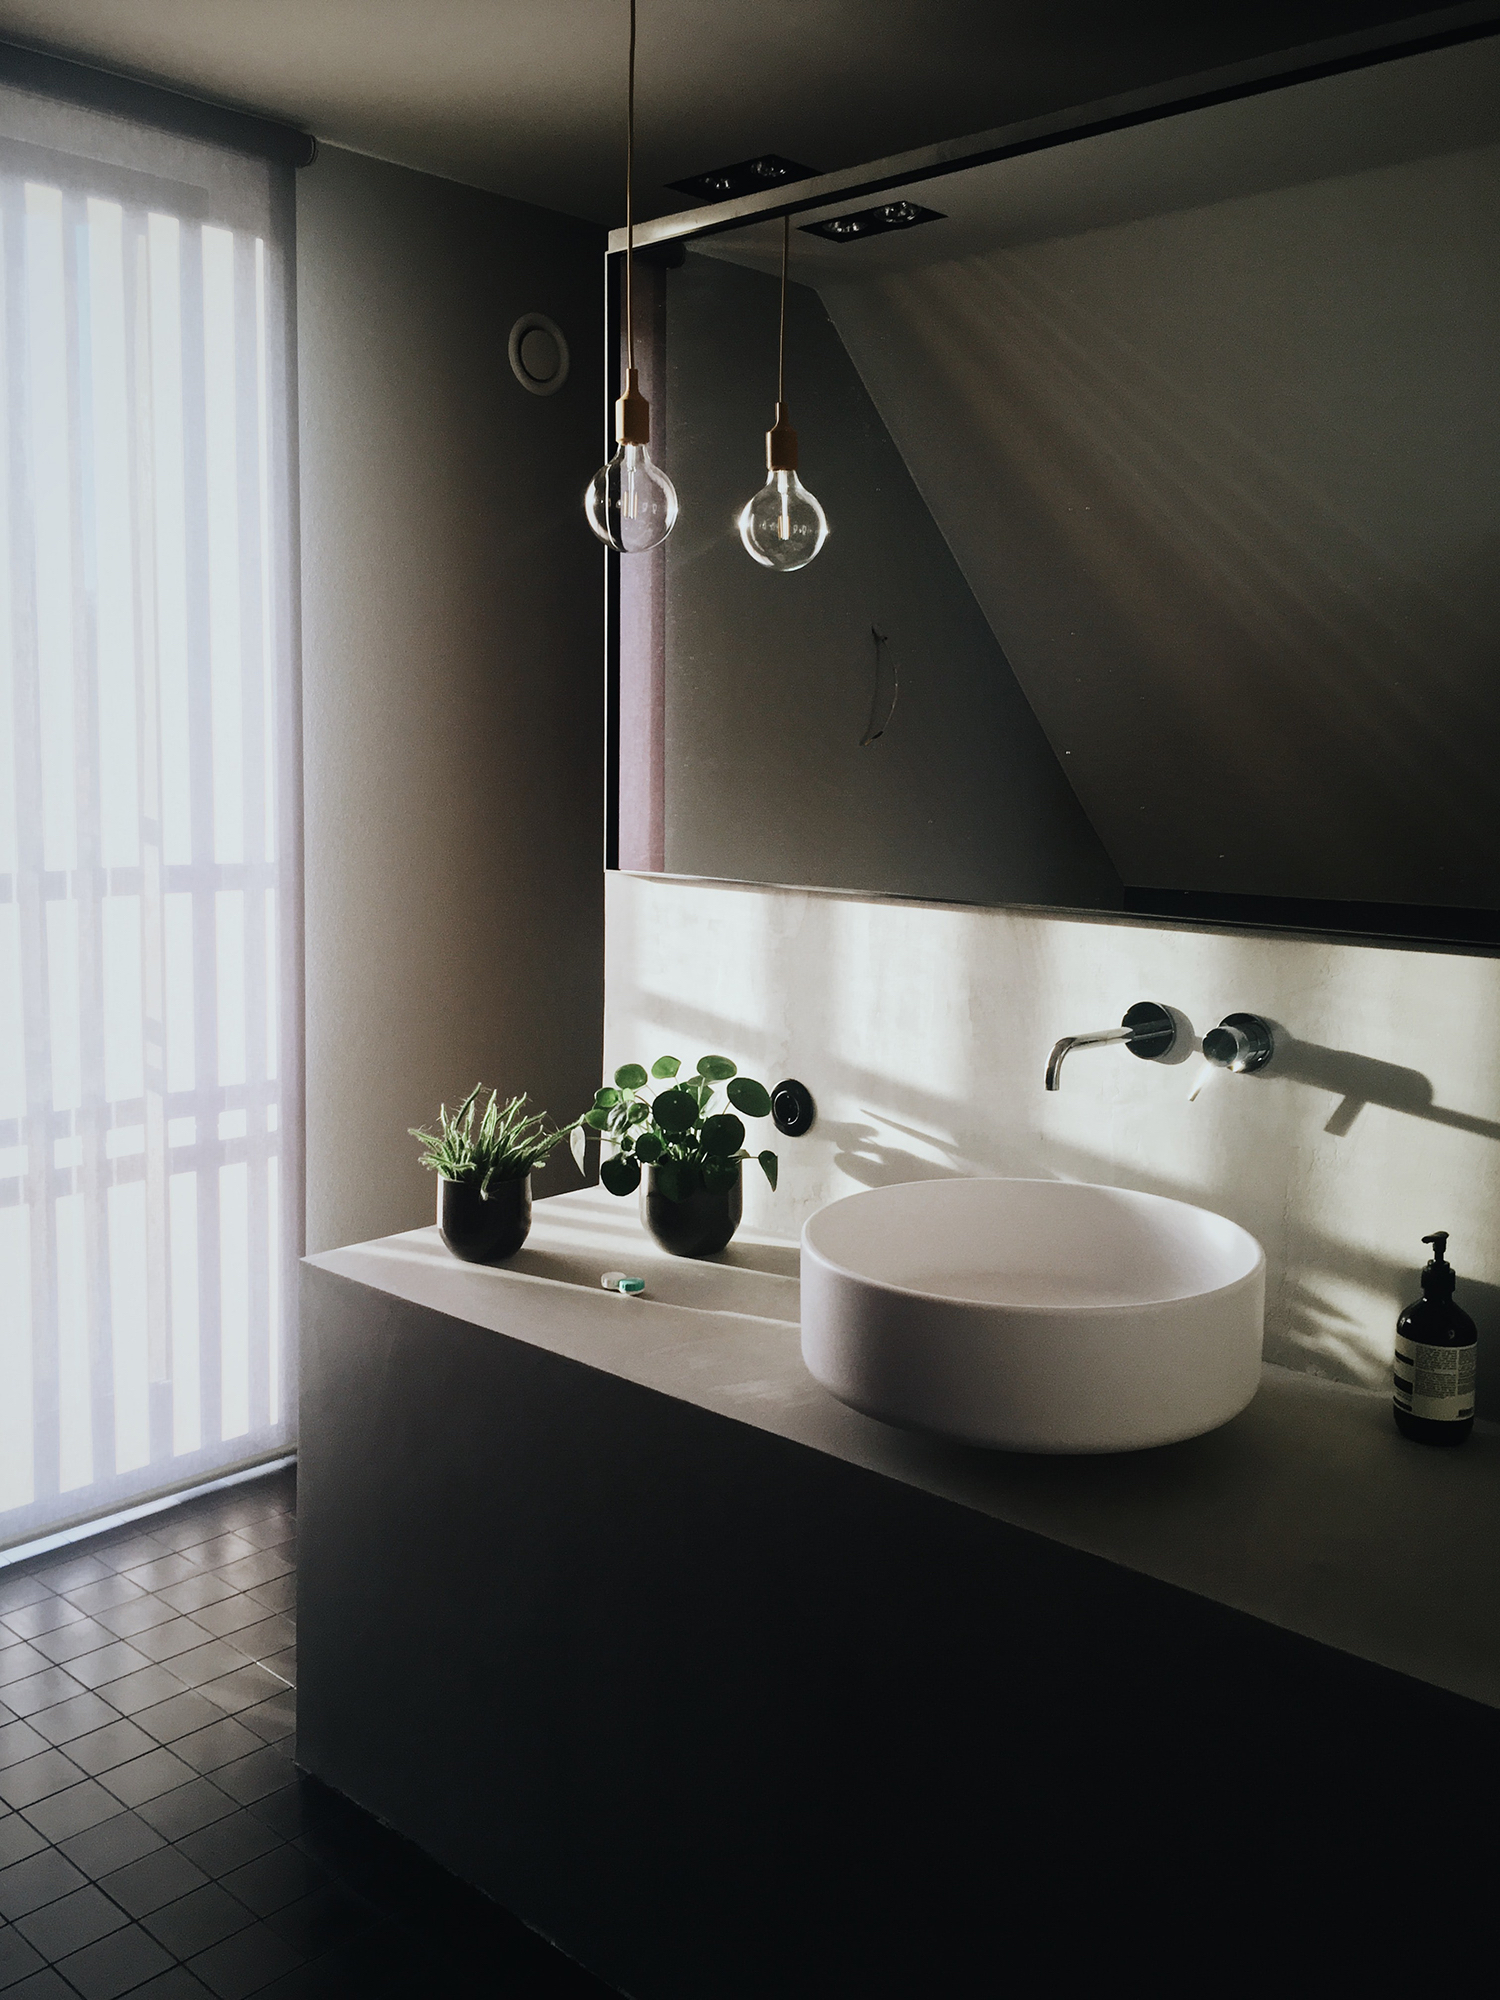 Светодиодная лента-оформление зеркал в ванной комнате